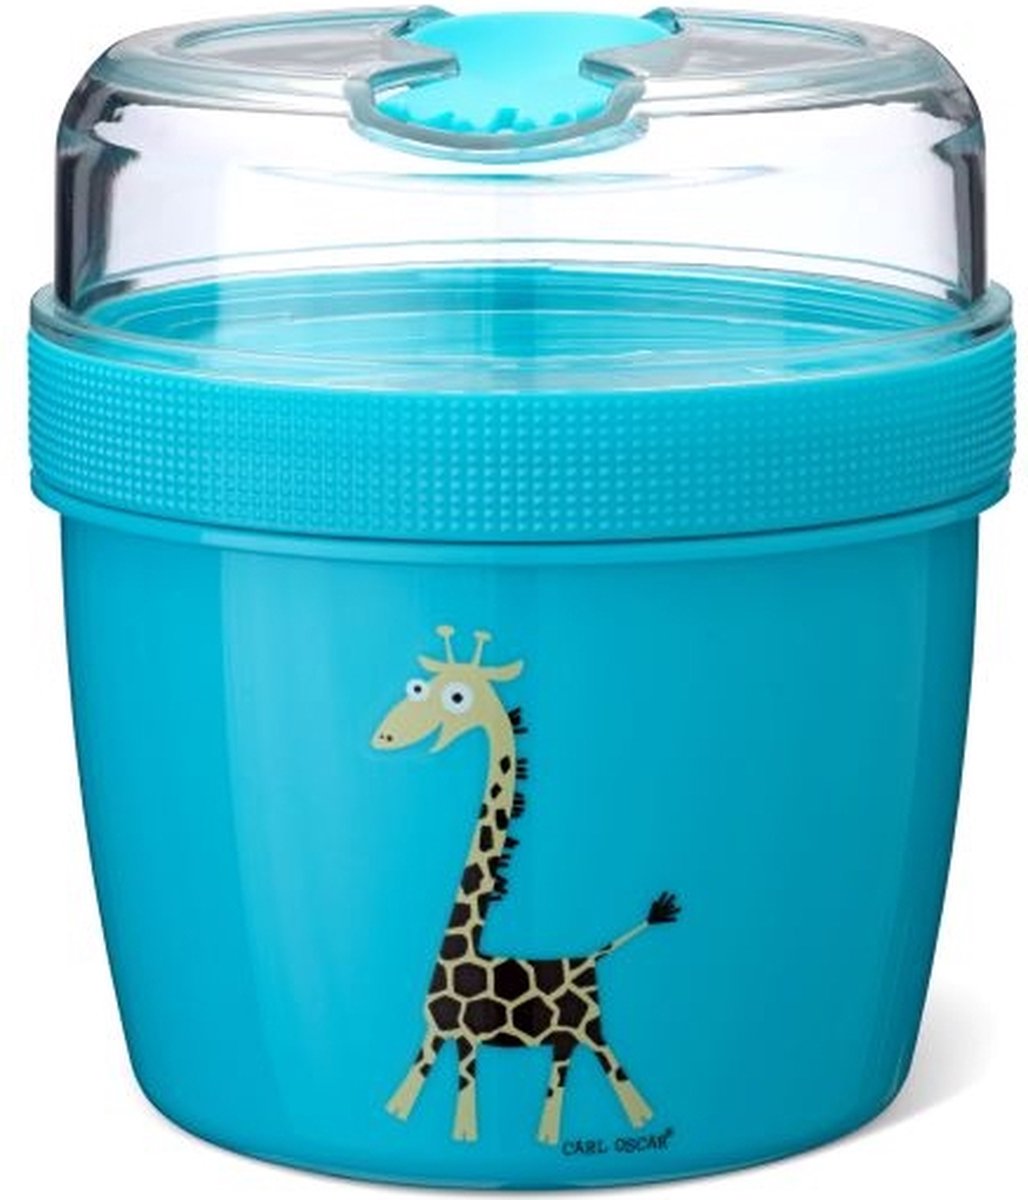 Carl-Oscar N'ice Cup - Turquoise/Giraf - Met koelement - 0,5 L